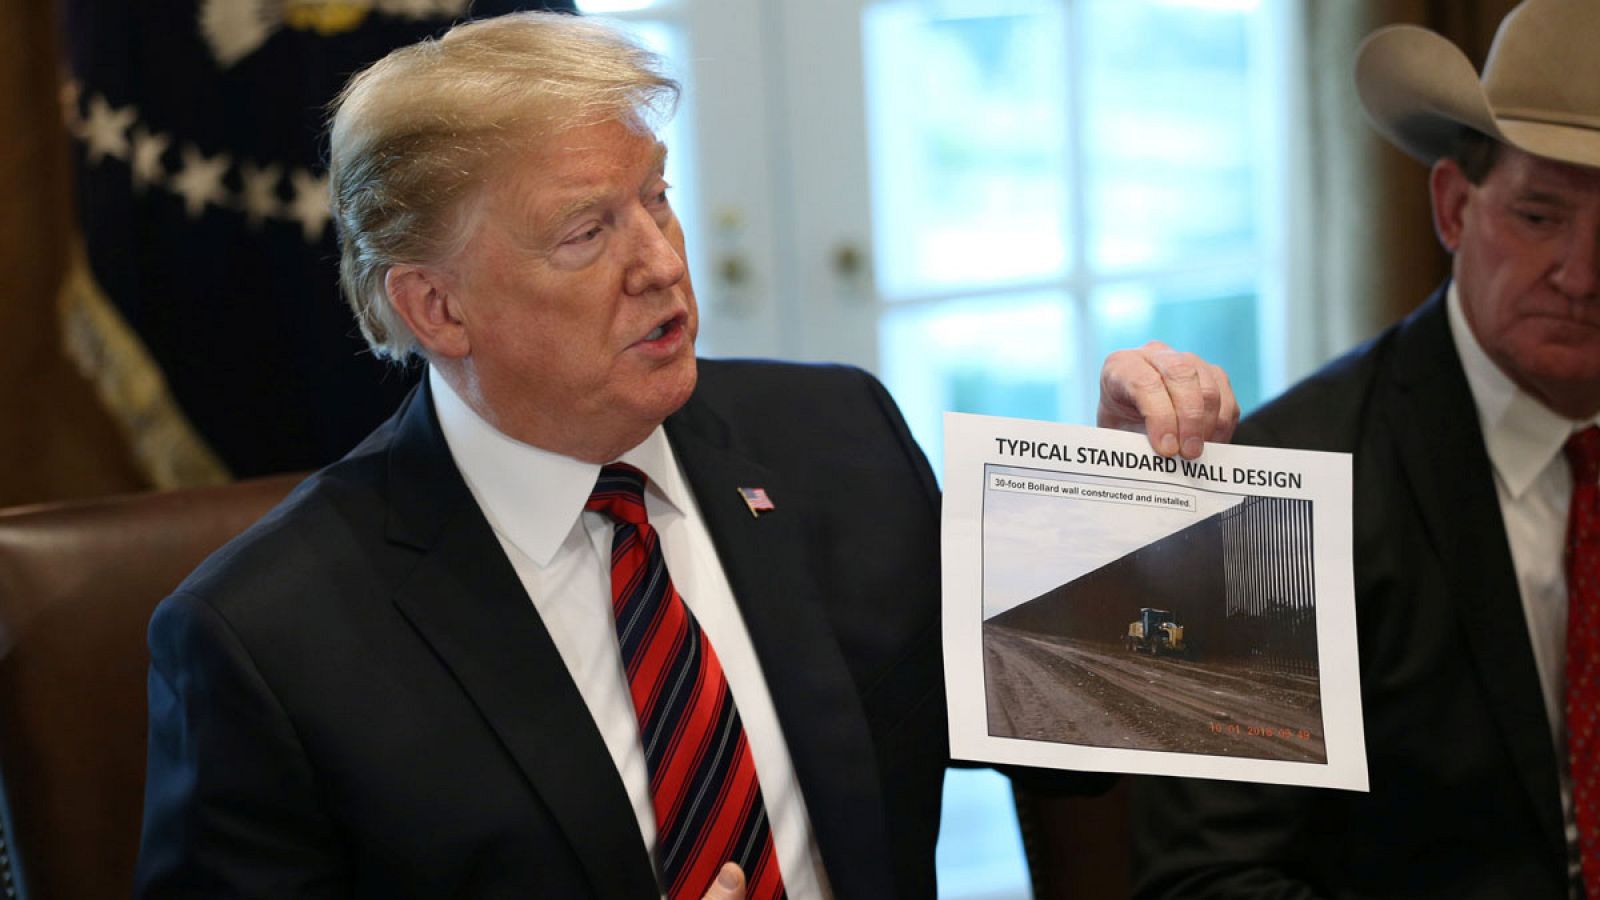 El presidente de los Estados Unidos, Donald Trump, sosteniendo una foto con un mensaje sobre el muro durante una reunión en la Casa Blanca en Washington.